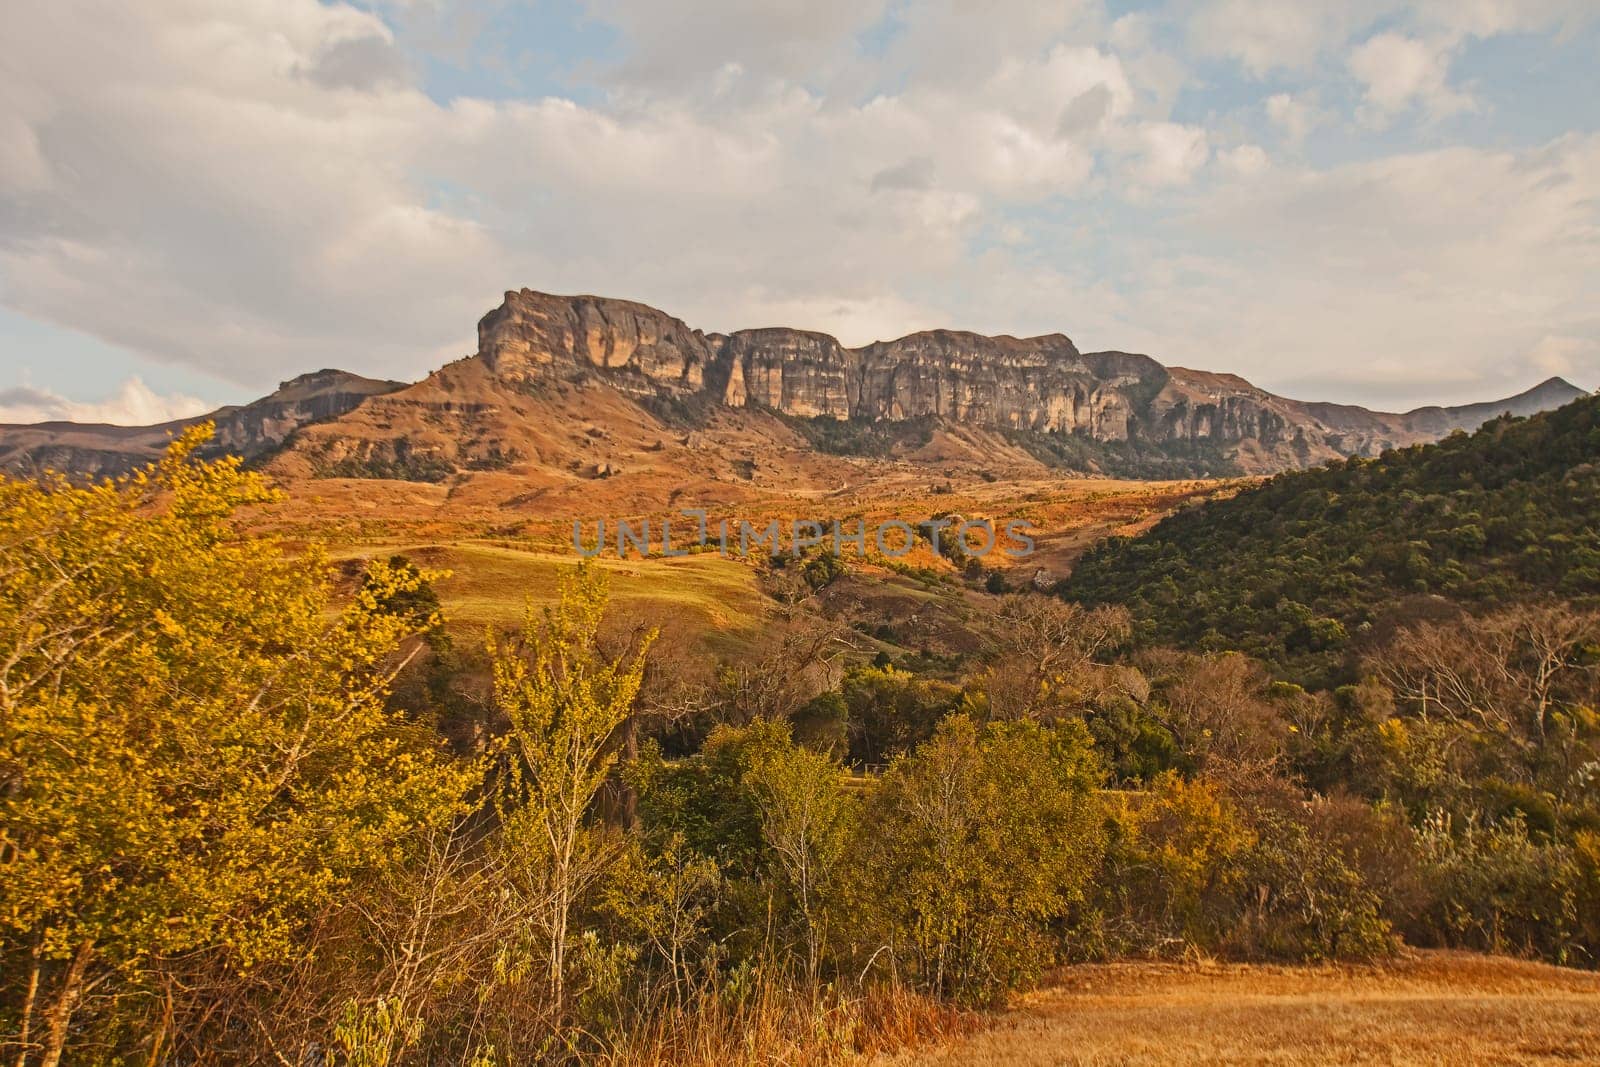 Drakensberg Mountain scene 15562 by kobus_peche